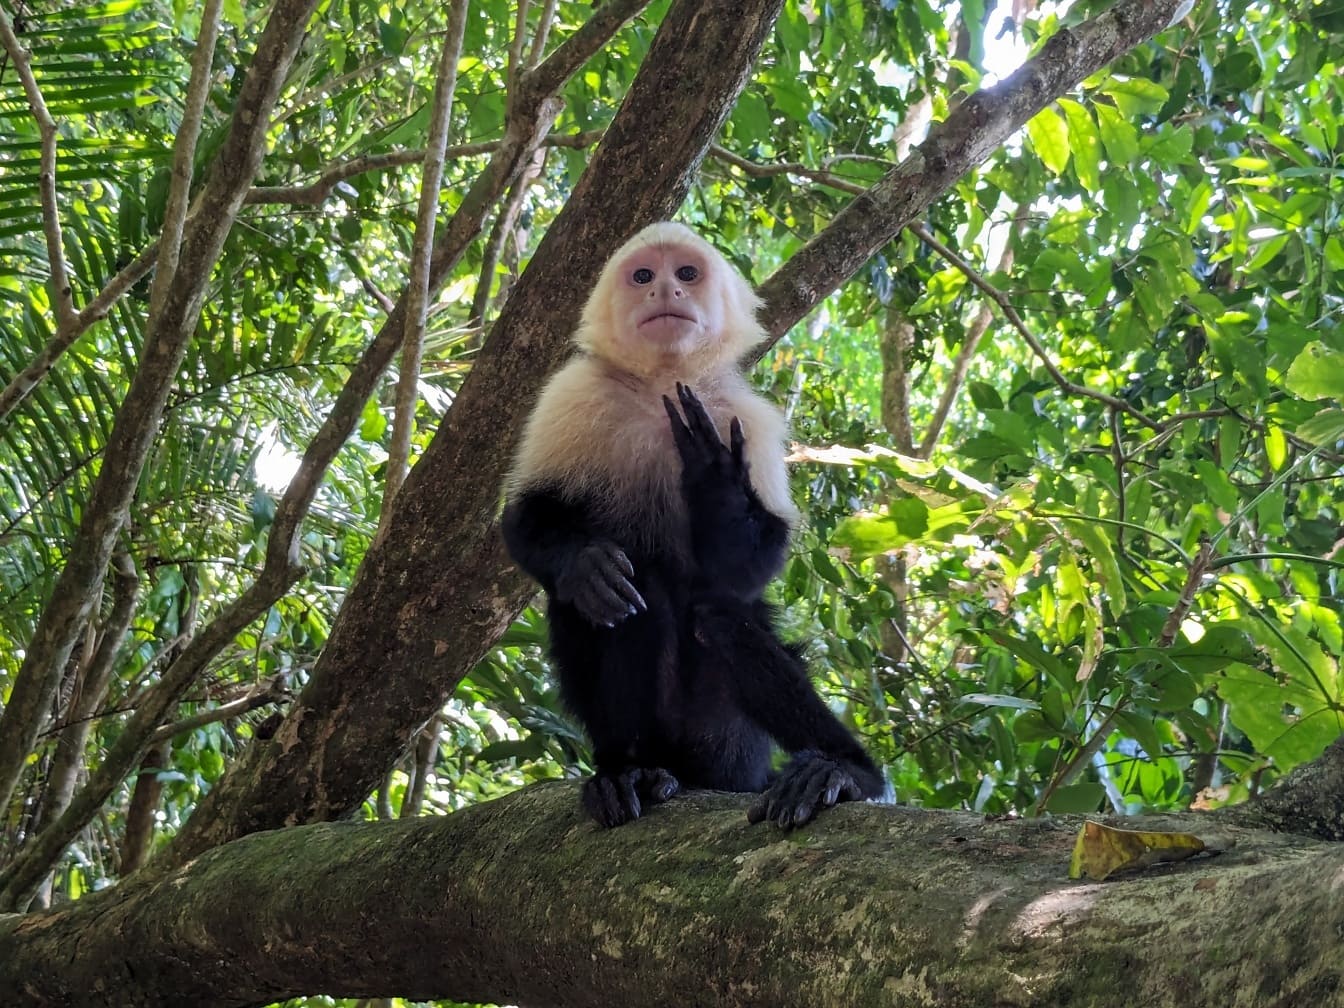 Capuchin mặt trắng Panama (Cebus imitator) con khỉ ngồi trên cành cây